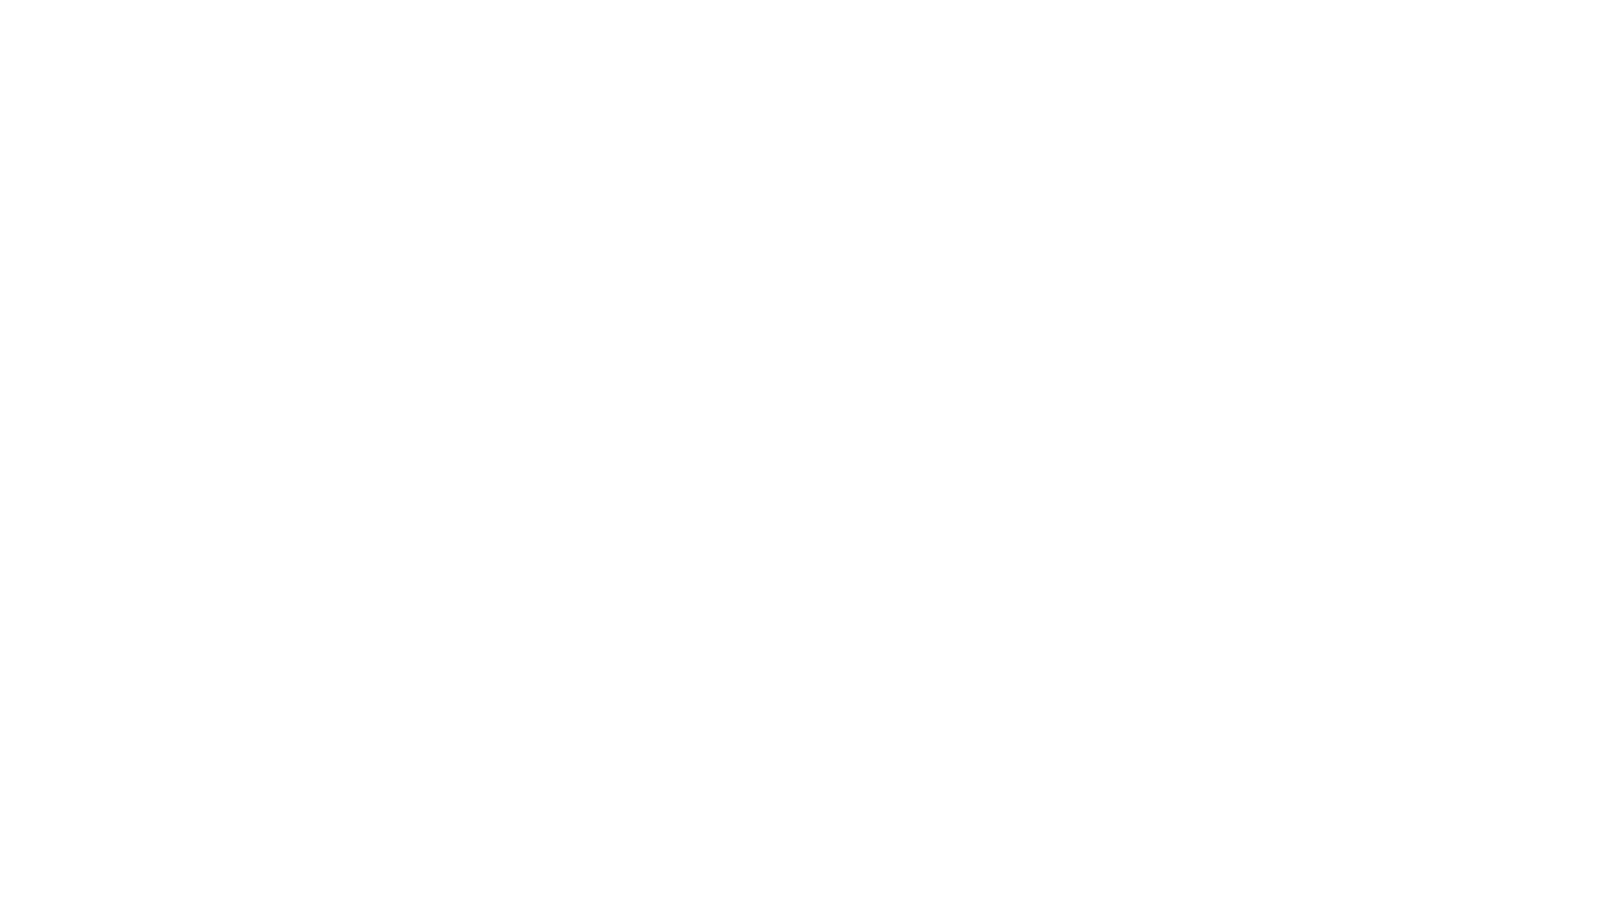 Мастер Павел Долгих. 
Республика Карелия Медвежьегорский район.
Изготовление киля и штевней для Ёлы. 
ПРИСОЕДИНЯЙСЯ:
Сайт https://ckboat.ru/
Группа в ВК https://vk.com/canoe_kayak_boat
Телеграм: https://t.me/canoekayakboat